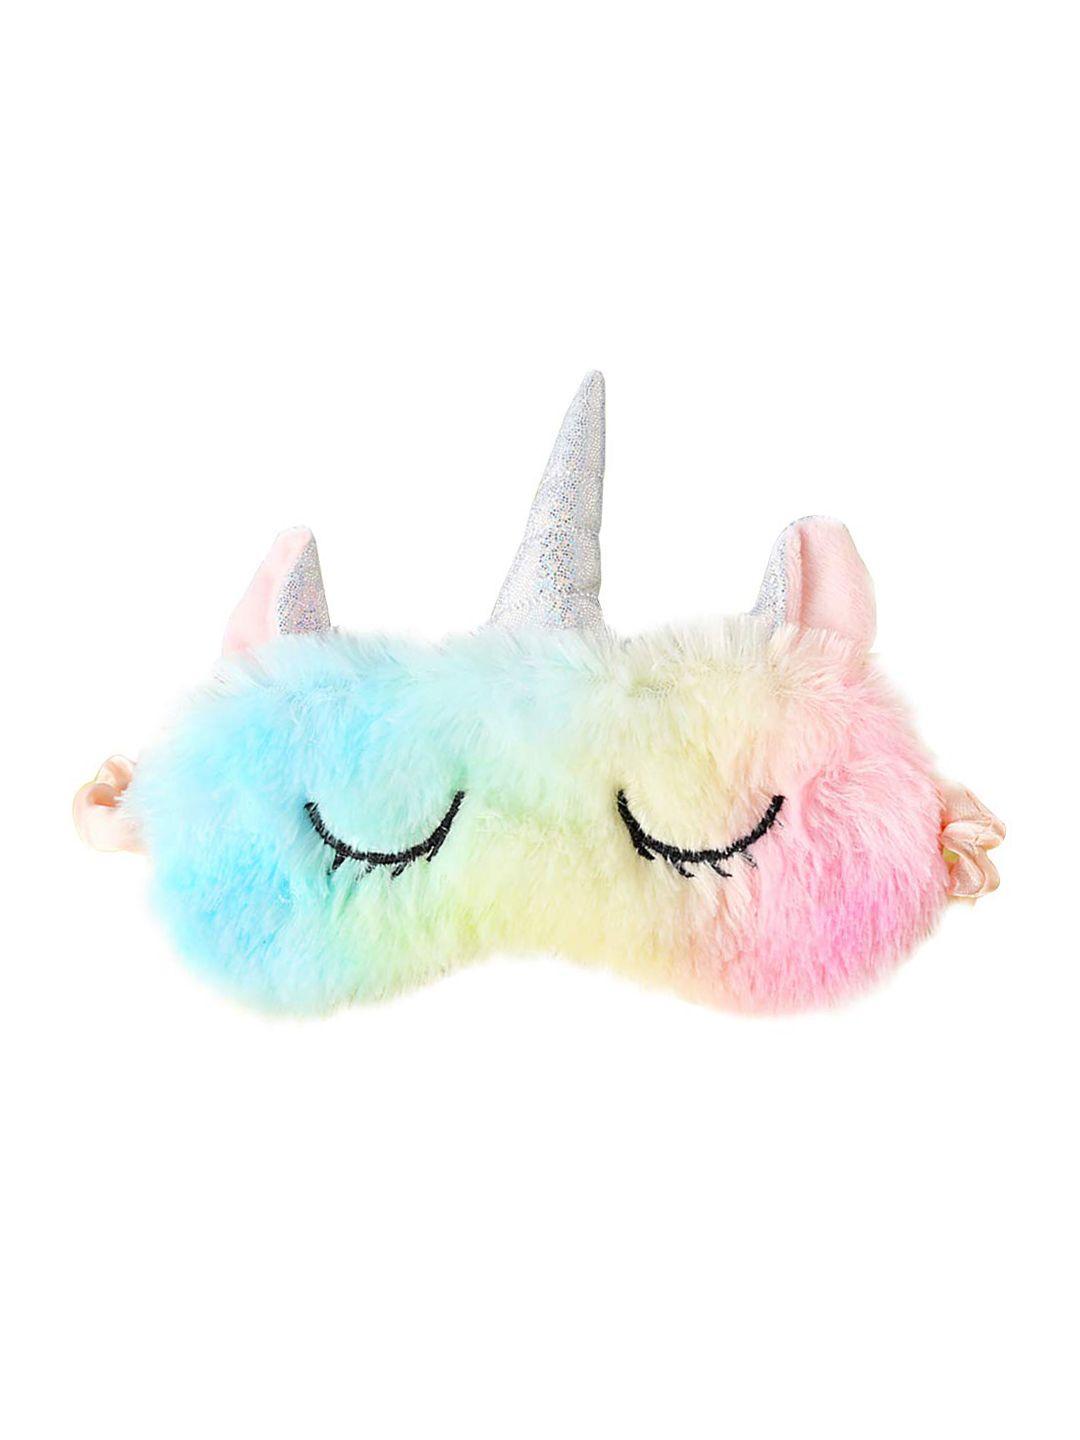 skylofts unisex kids multi-colored unicorn eye masks